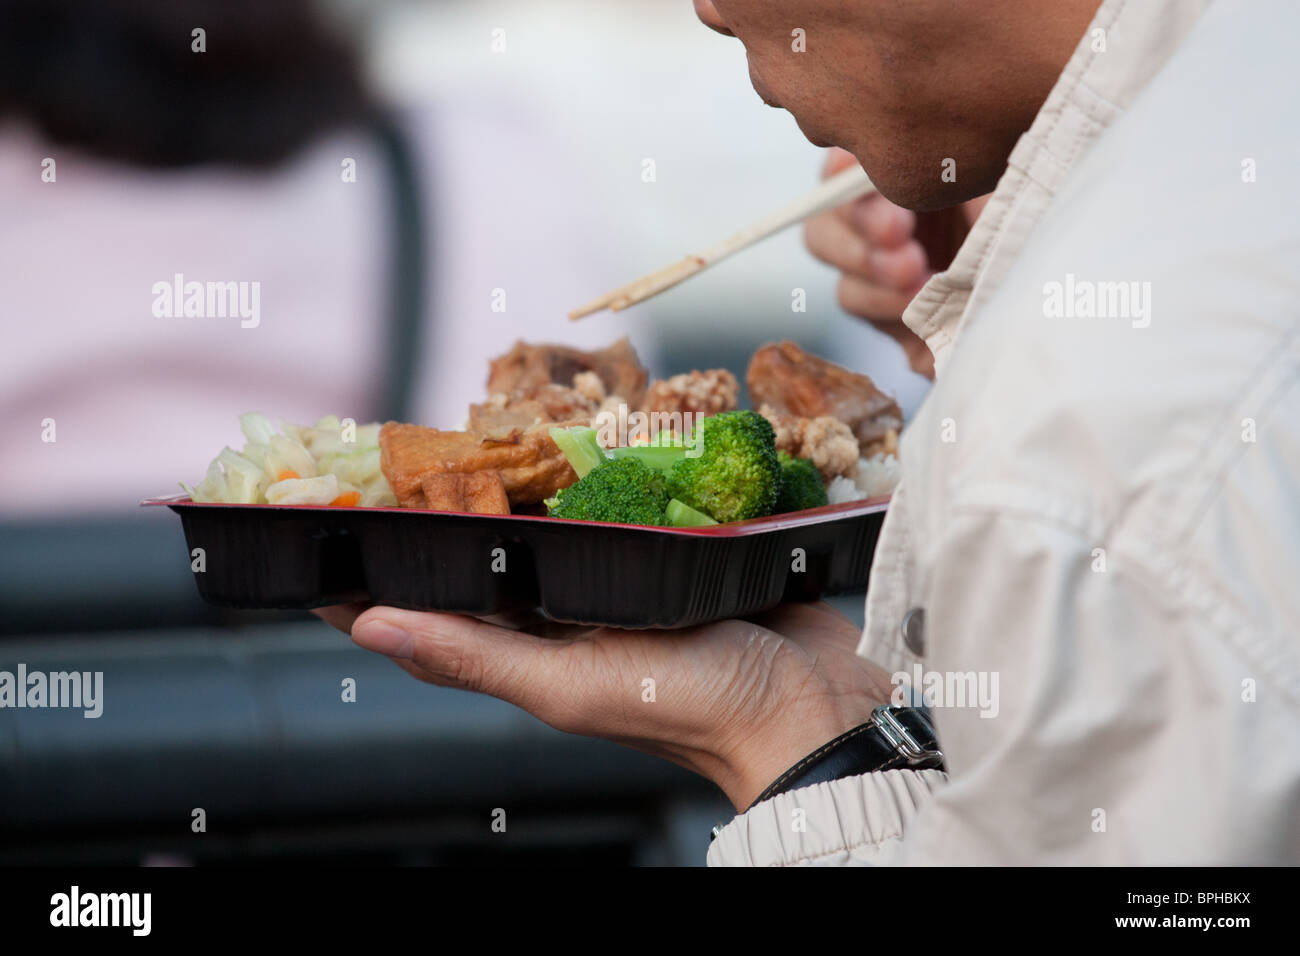 man eating Asian food chopstick Stock Photo